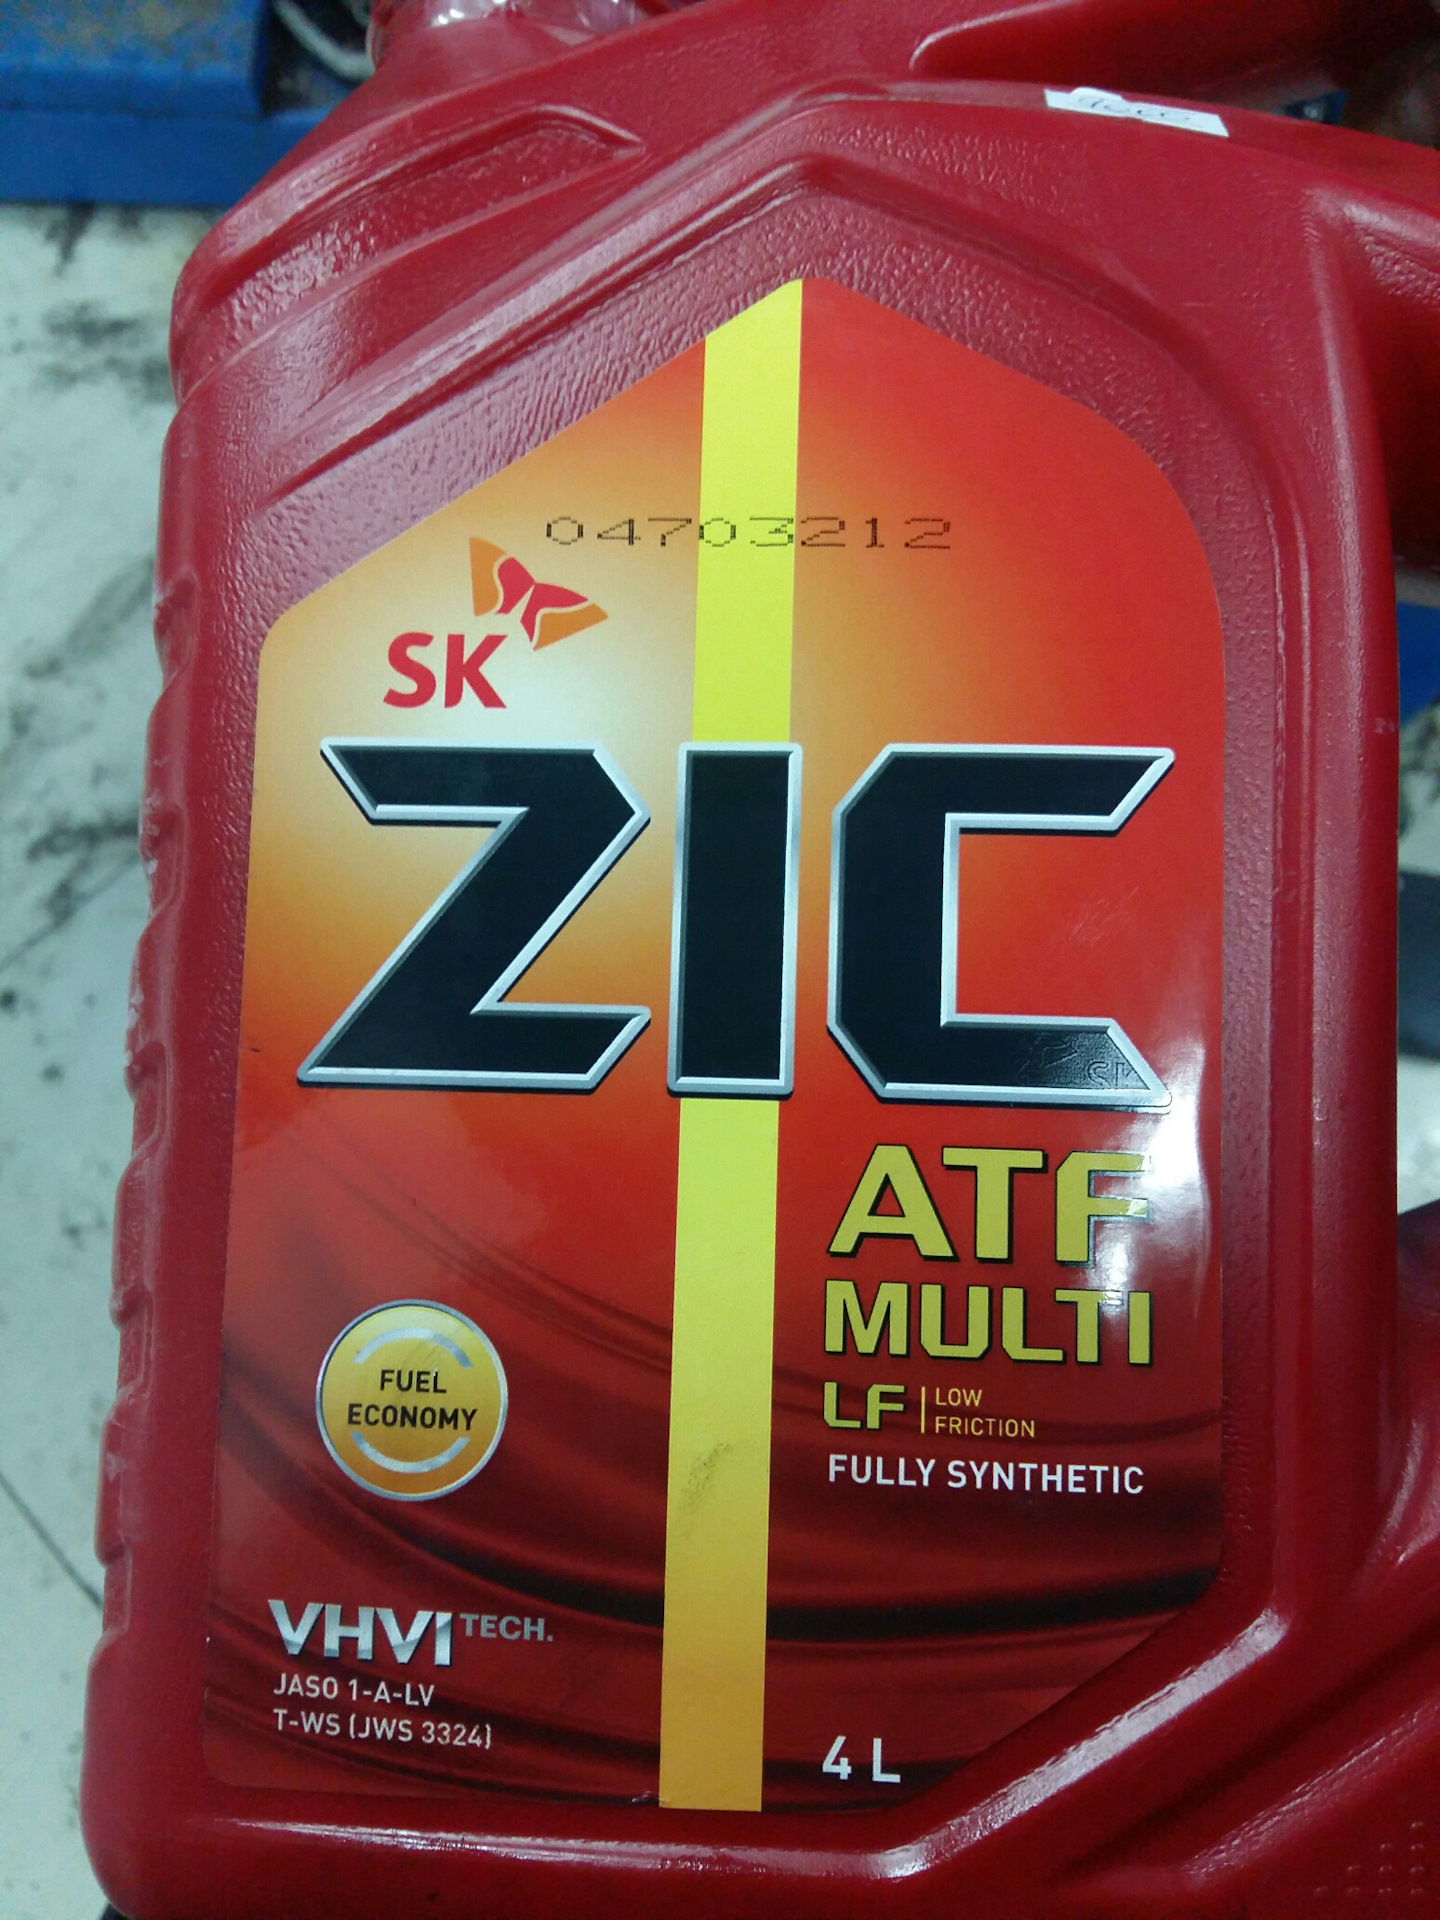 Zic atf multi купить. Масло трансмиссионное ZIC ATF Multi LF синтетическое 4. ZIC масло трансмиссионное ZIC ATF Multi 4л. Масло трансмиссионное ZIC ATF Multi LF, 4 Л. ZIC 162665 масло трансмиссионное.